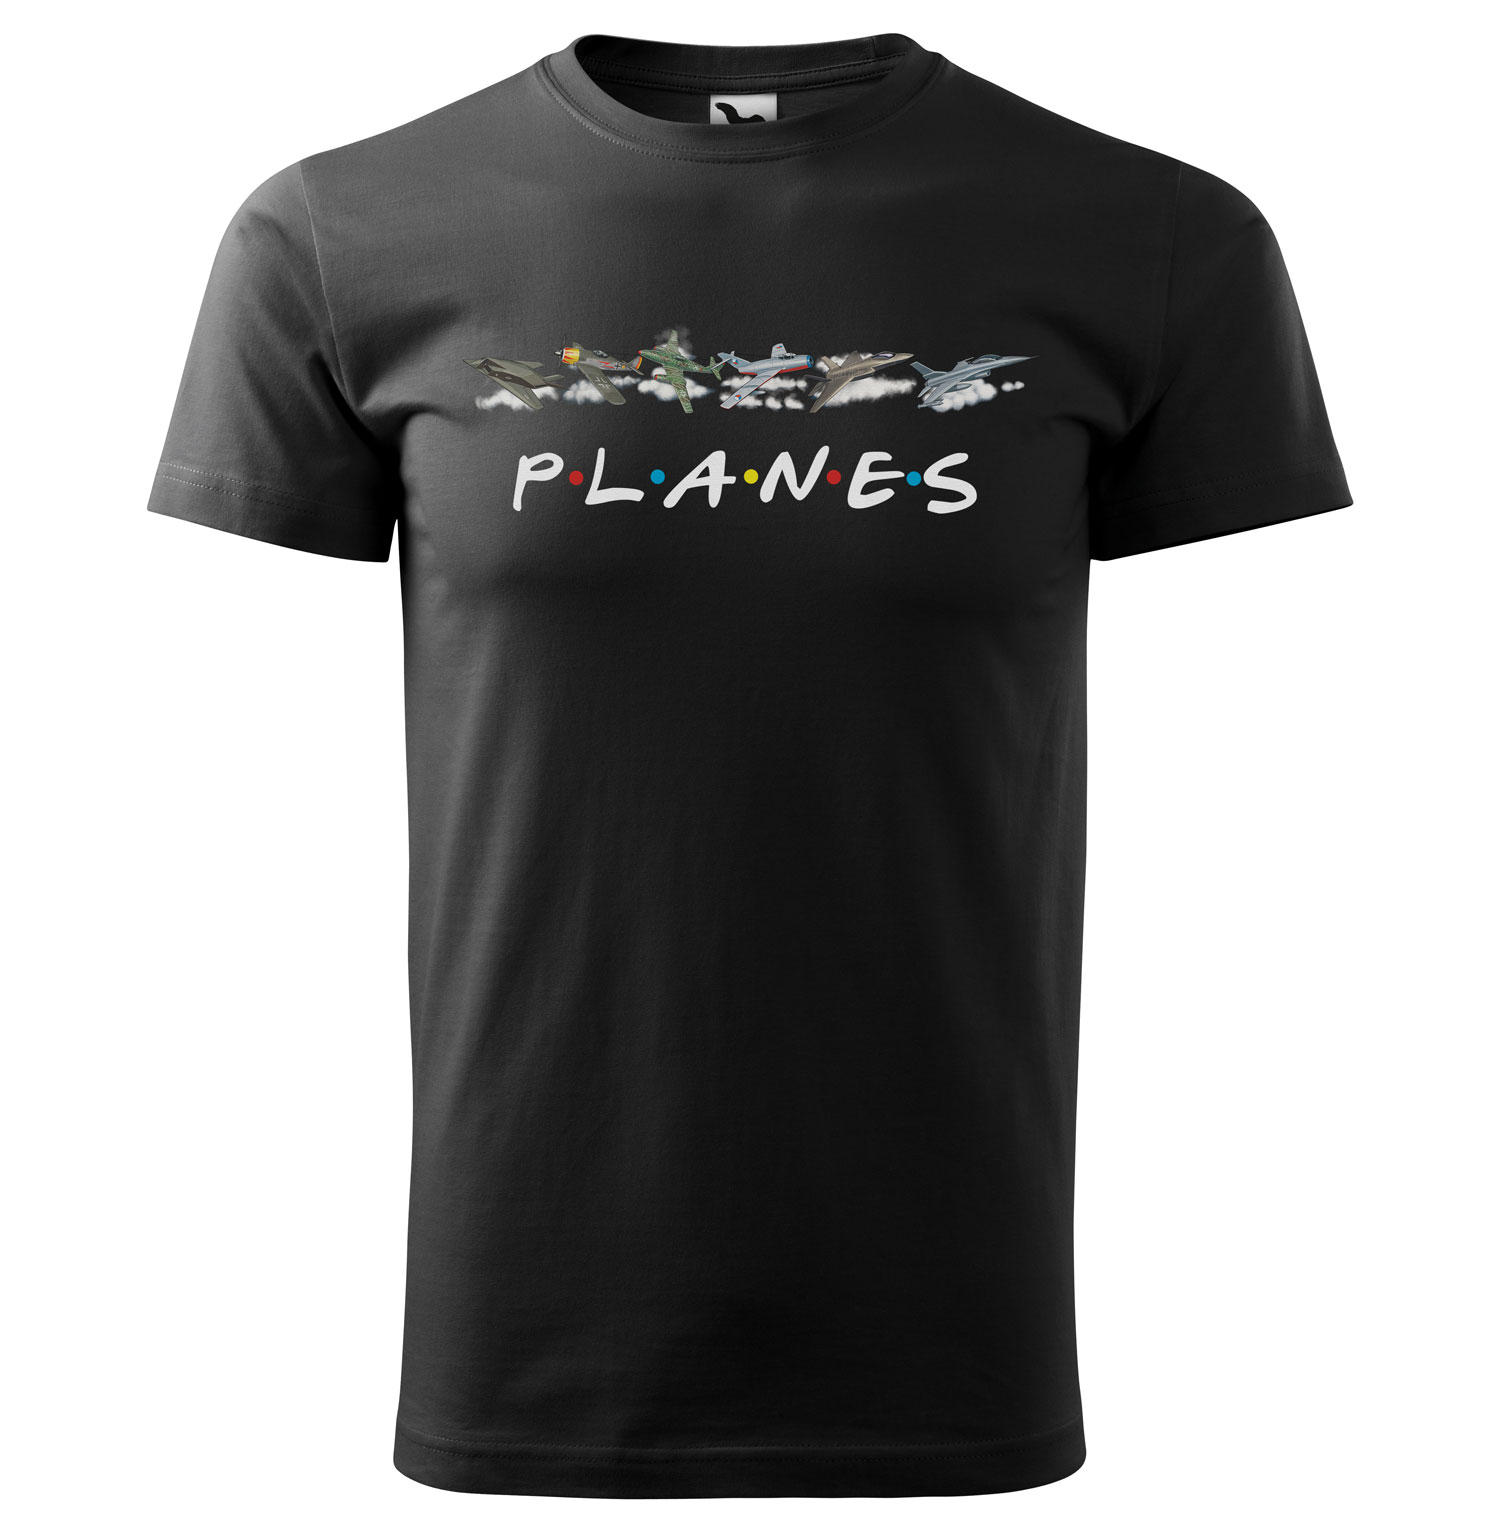 Tričko Planes (Velikost: XS, Typ: pro muže, Barva trička: Černá)